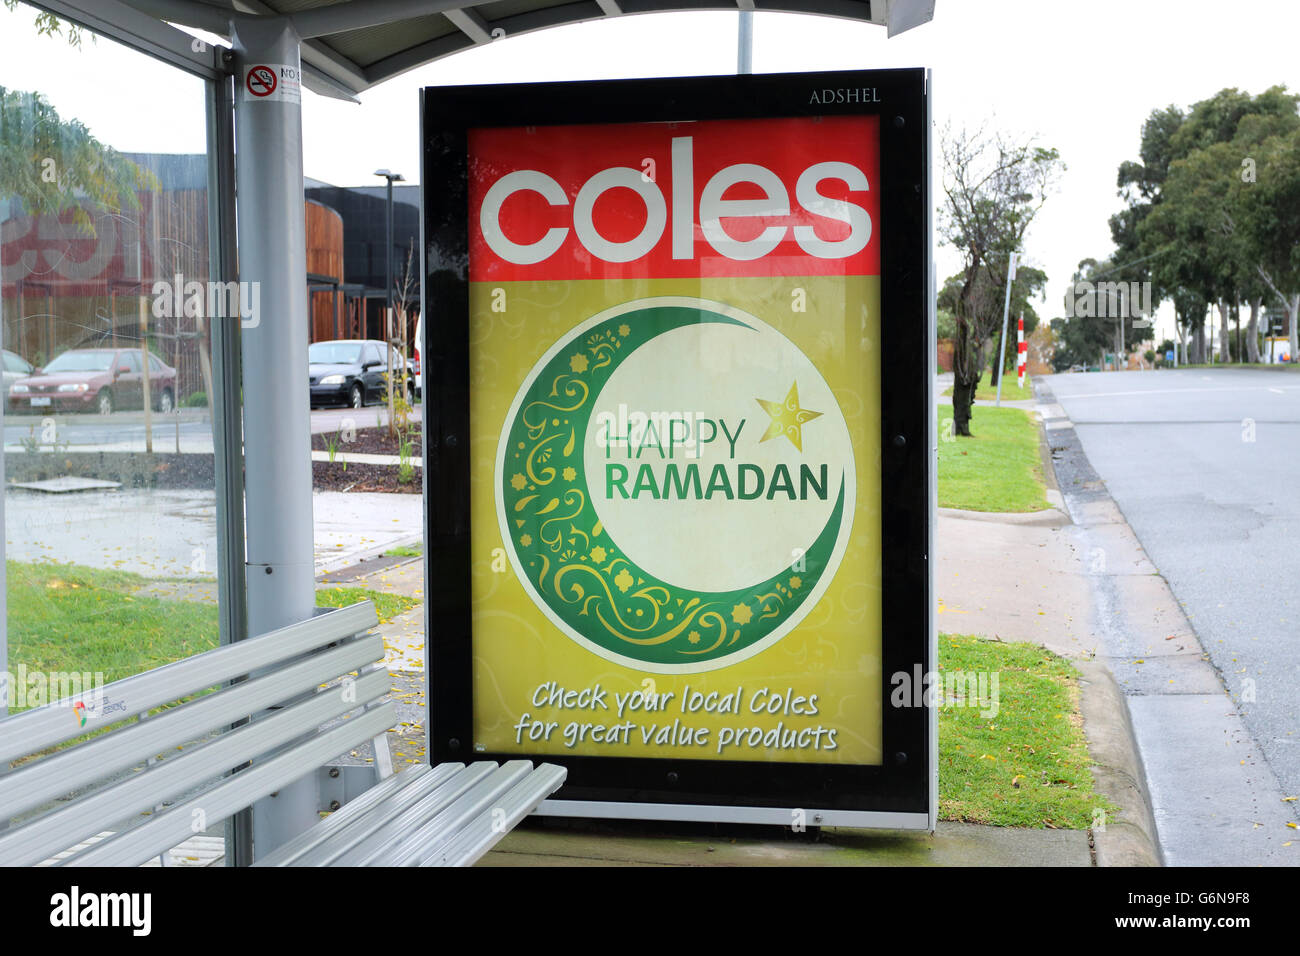 Joyeux Ramadan accueil à arrêt de bus local à partir de Coles, supermarché local de Victoria de Melbourne Australie Banque D'Images